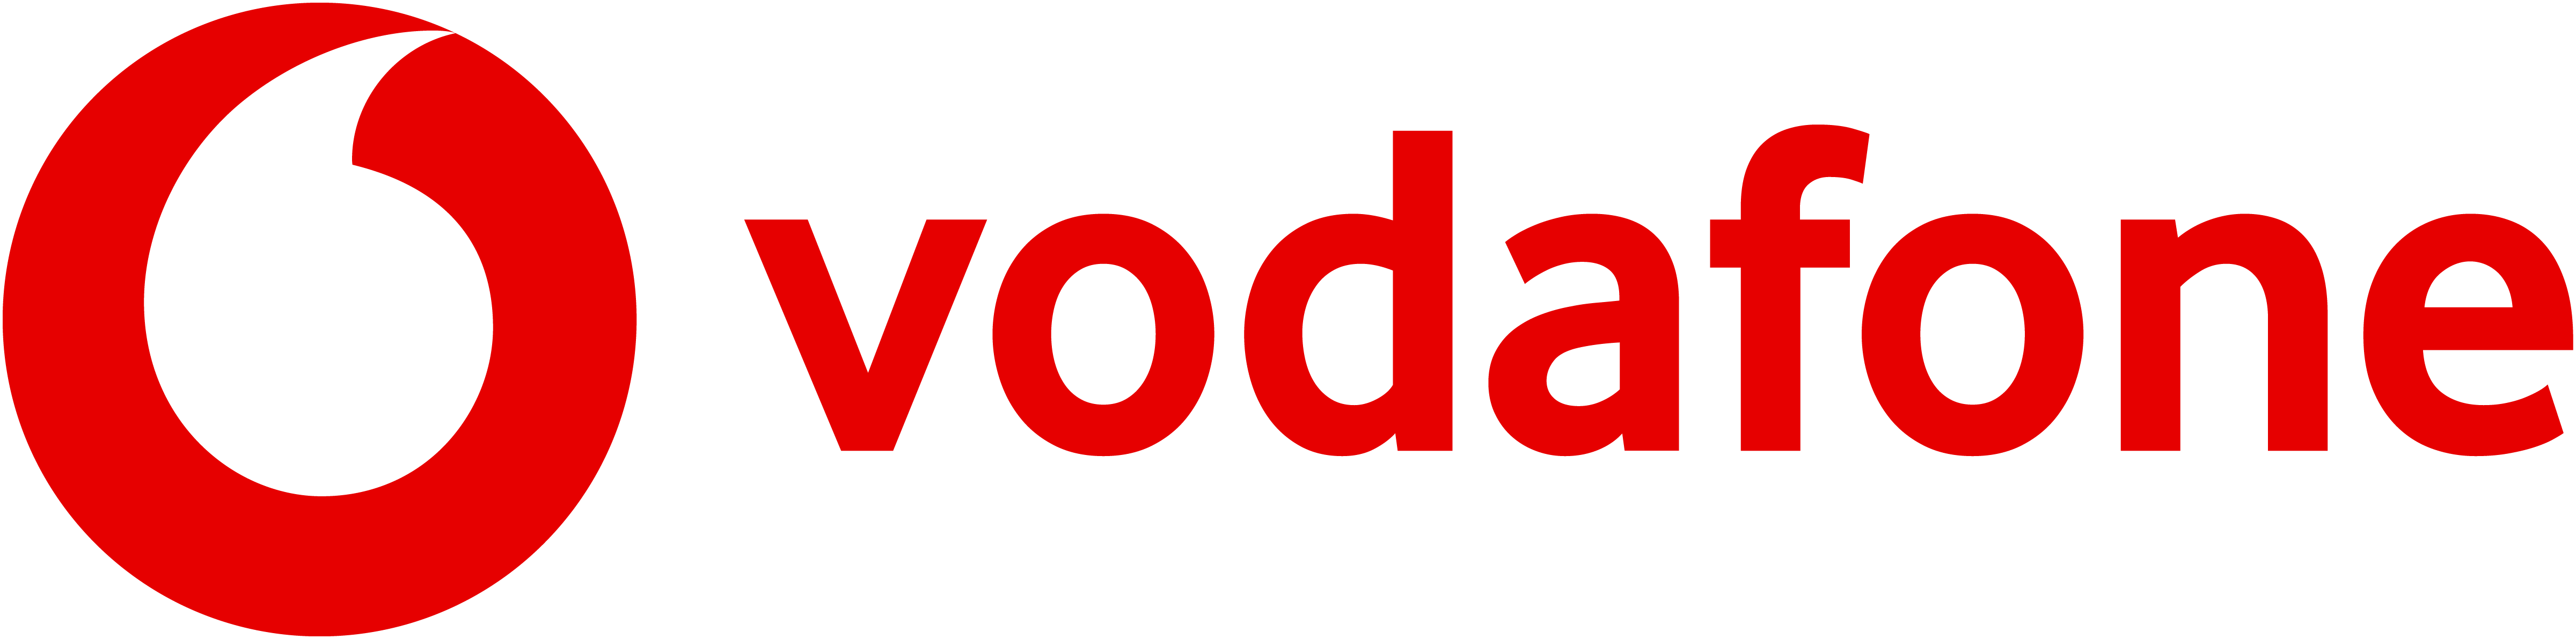 Vodafone lanza sus tarifas con datos móviles ilimitados